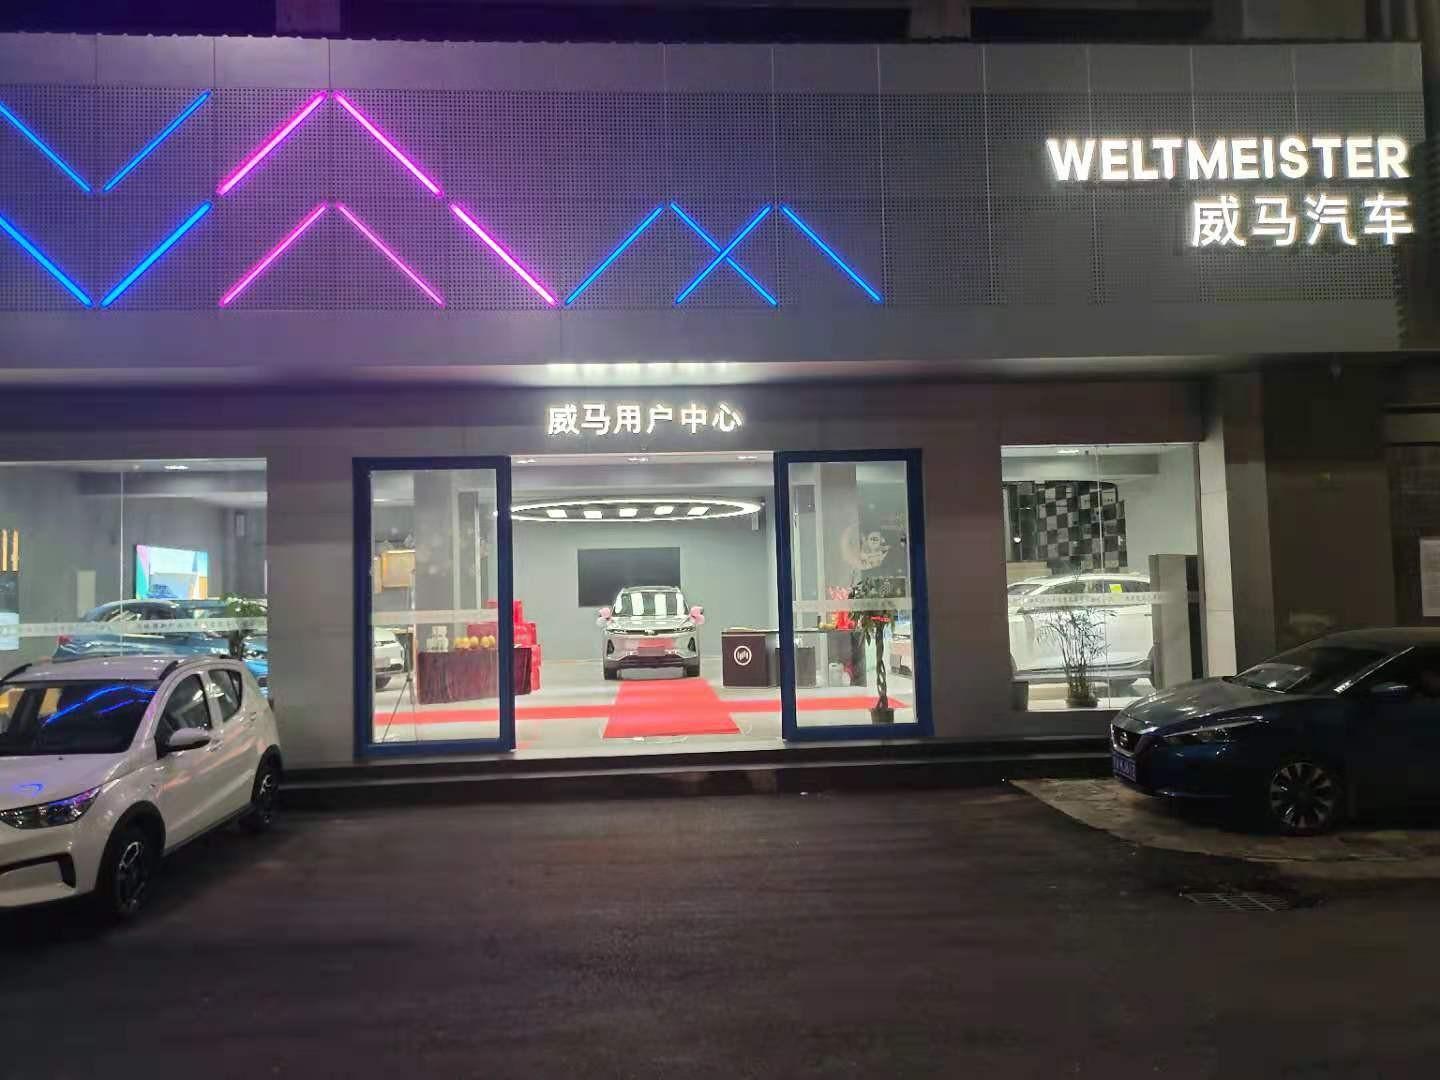 南昌威马用户中心瑞腾店